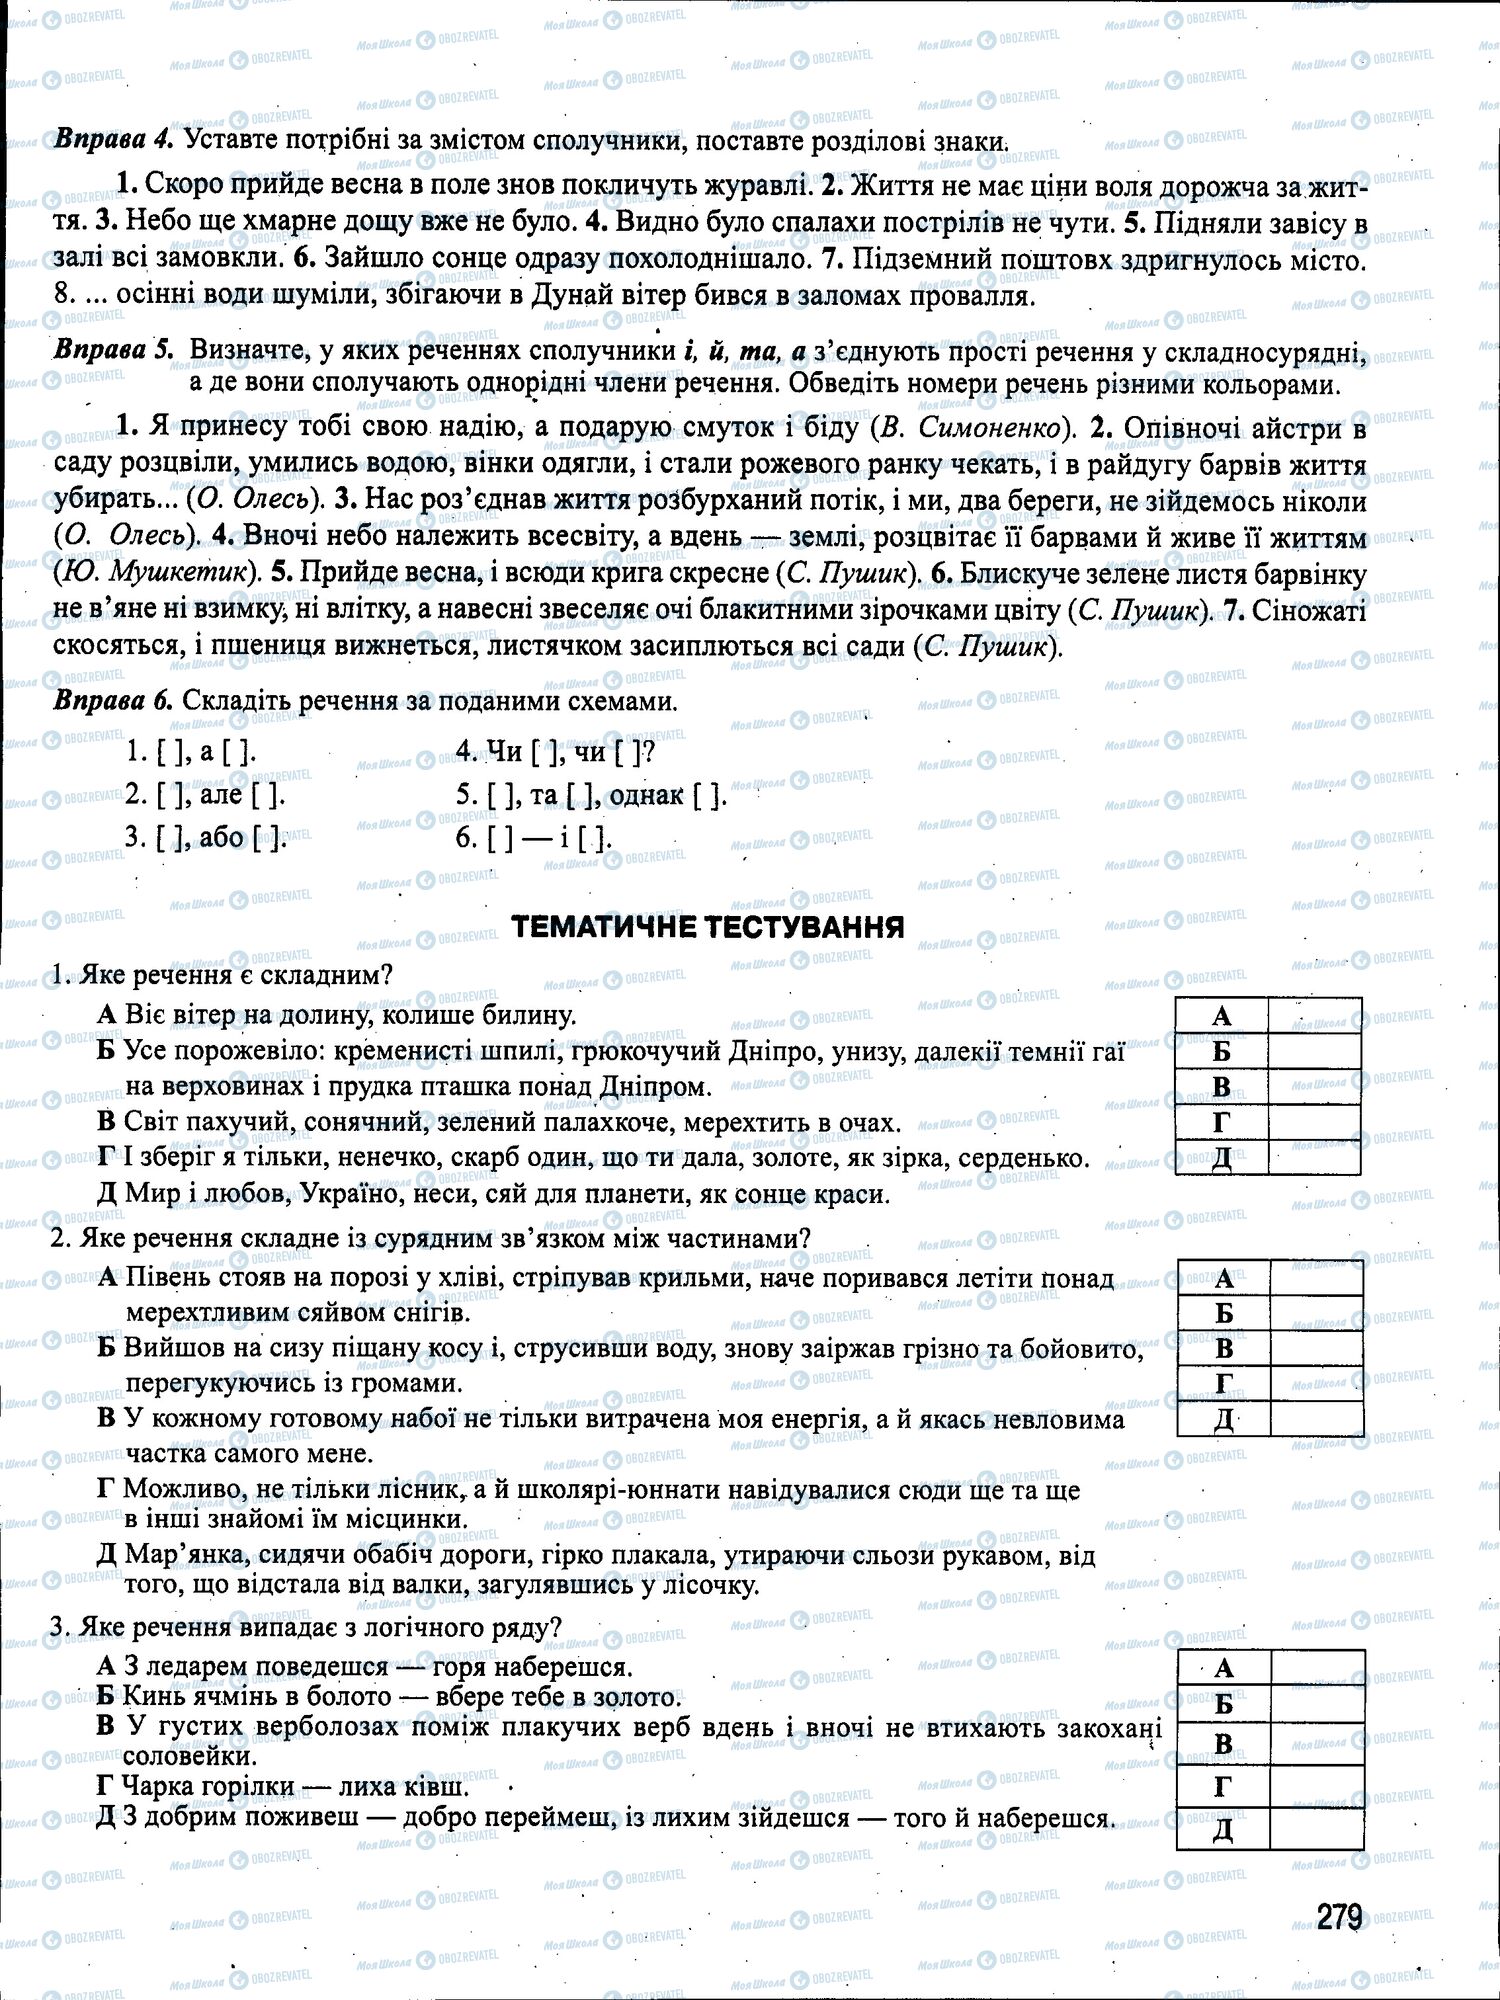 ЗНО Укр мова 11 класс страница 279